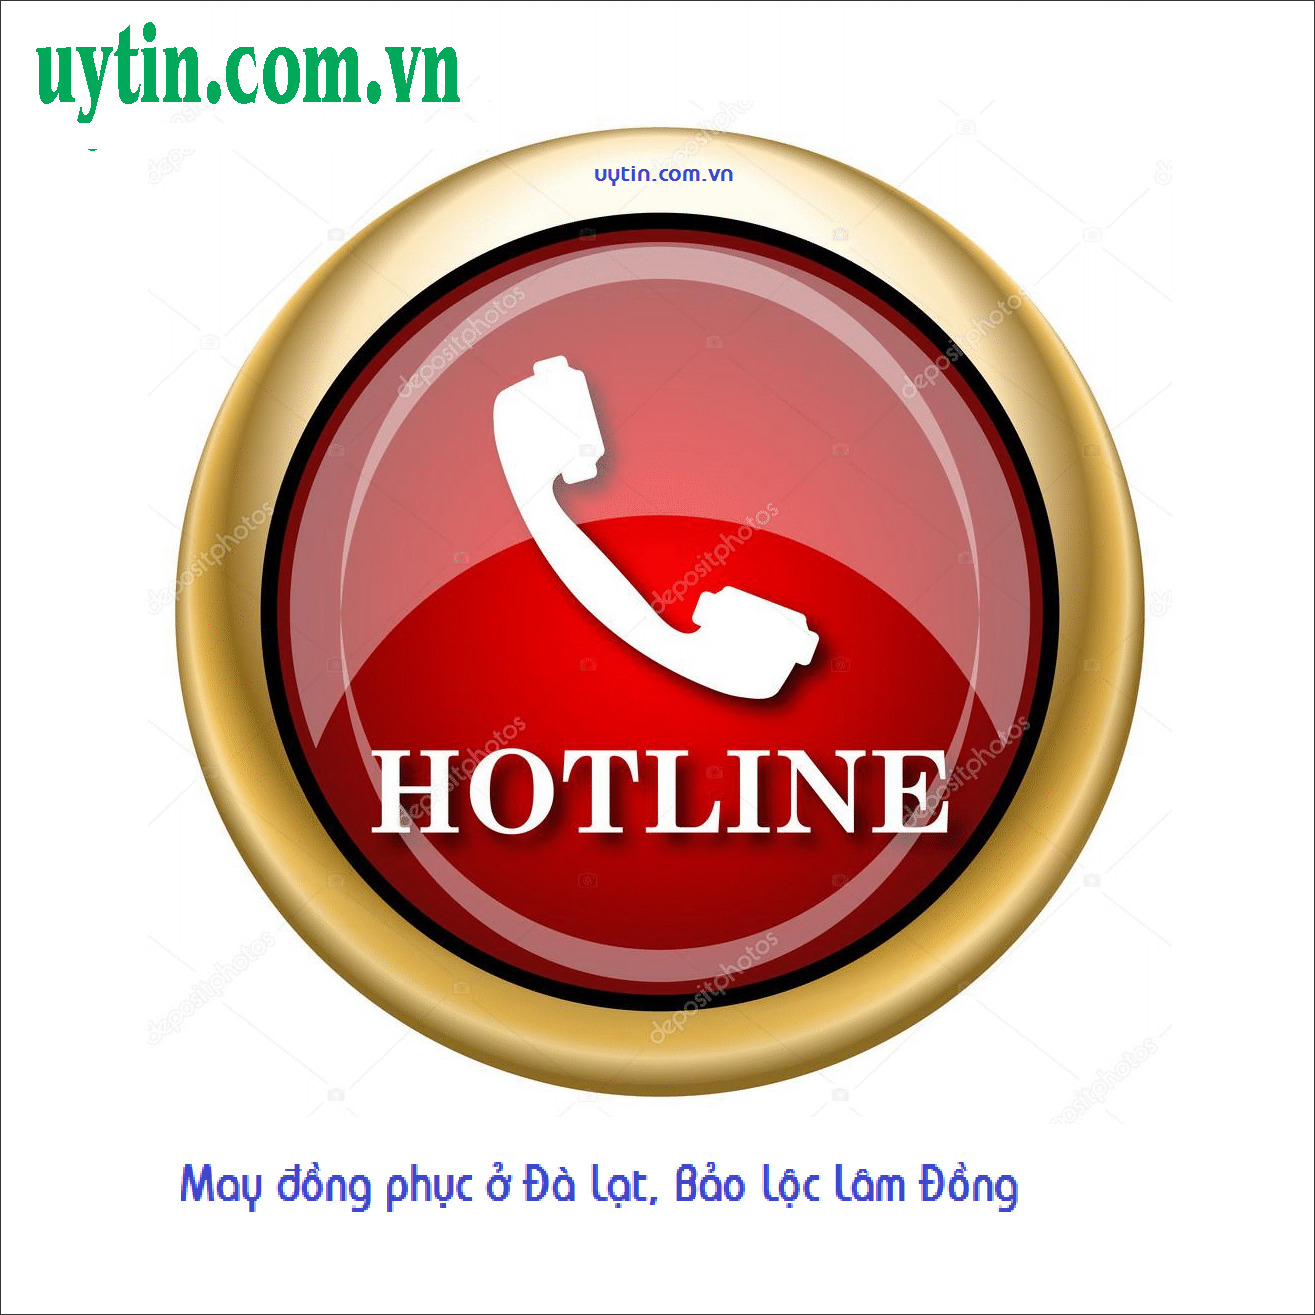 Read more about the article May đồng phục ở Đà Lạt, Bảo Lộc Lâm Đồng